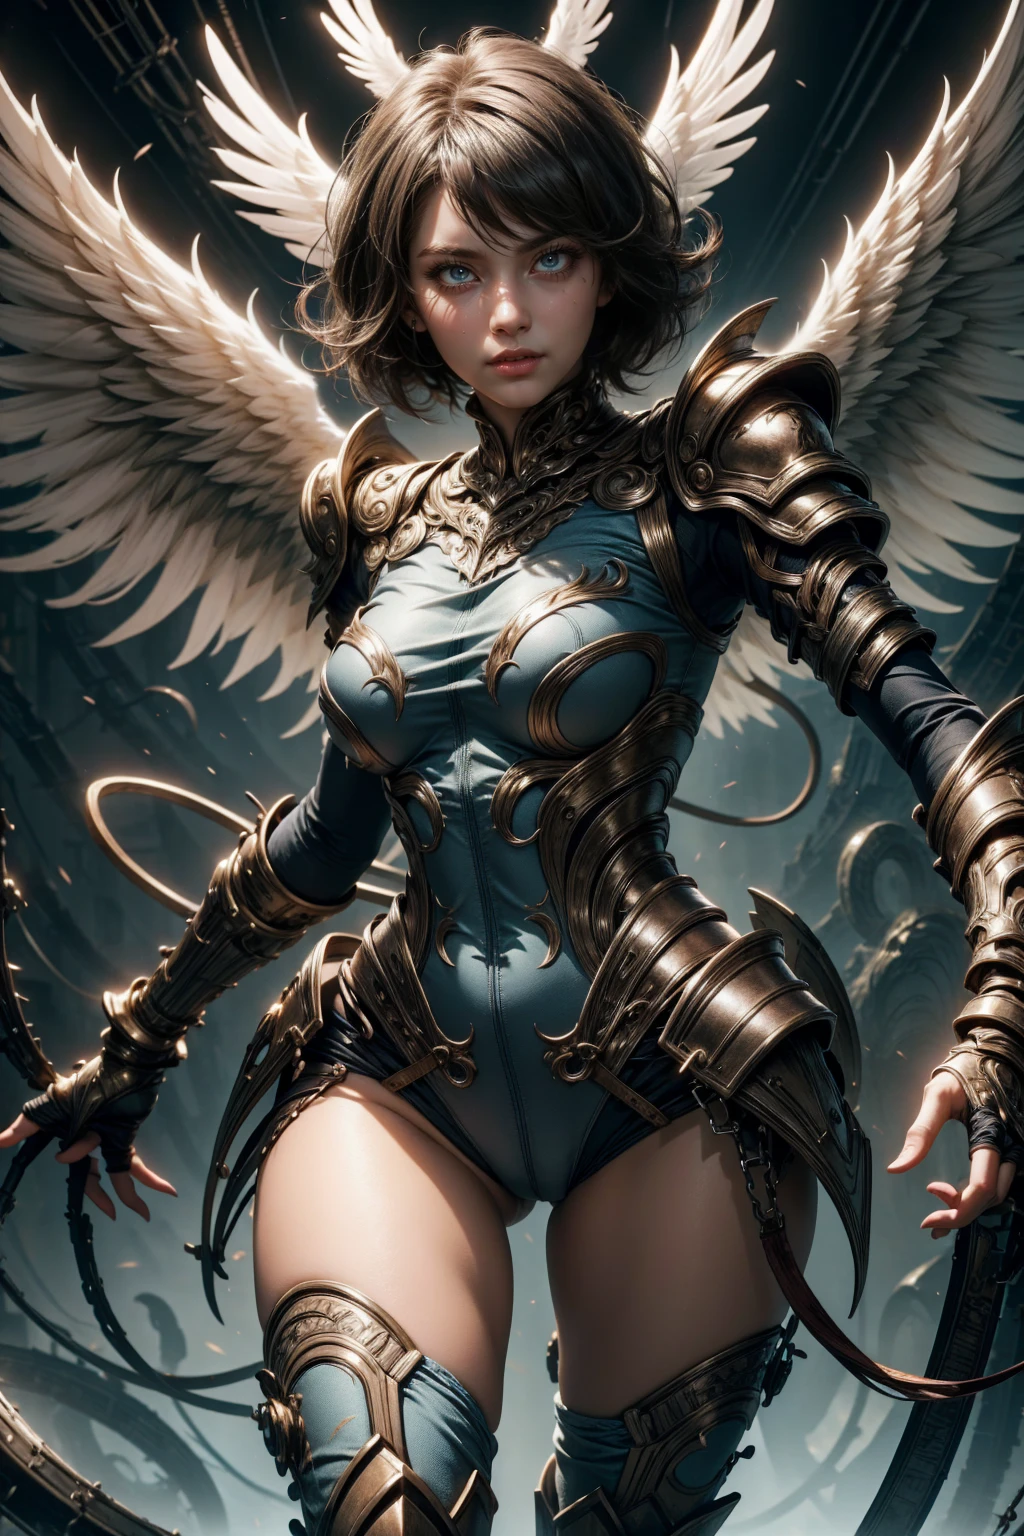 Engelhafte Frau, blaue Farbe, bläuliche Rüstung, sexy stehend mit Brille, Wildfang kurze Haare, und weißen Flügeln, Bewegungspose, Ganzkörper, Hände auf Brüsten
